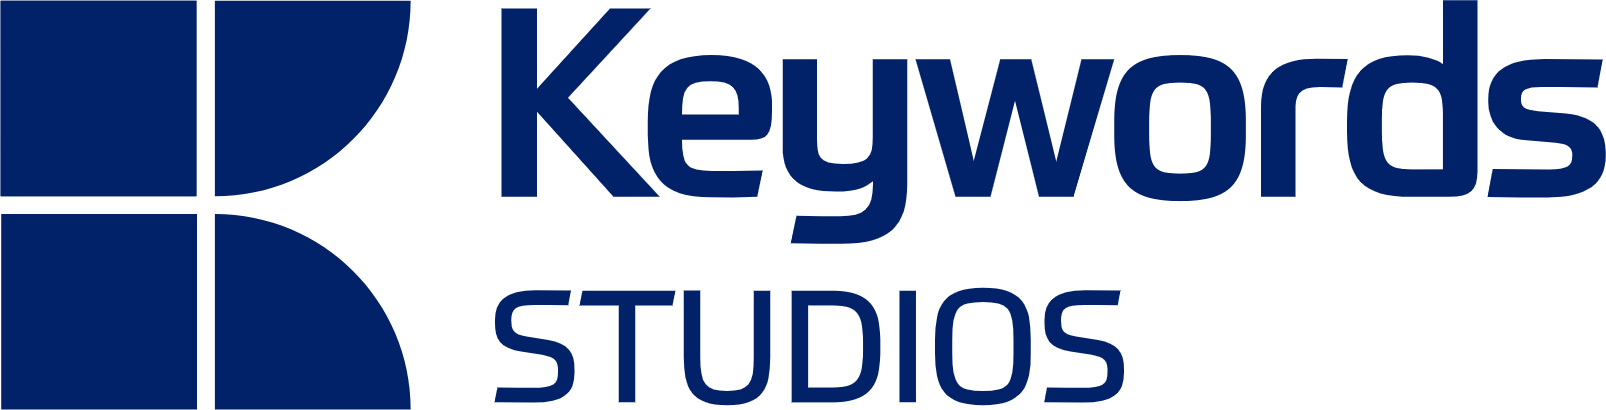 Keywords Studios logo large (transparent PNG)